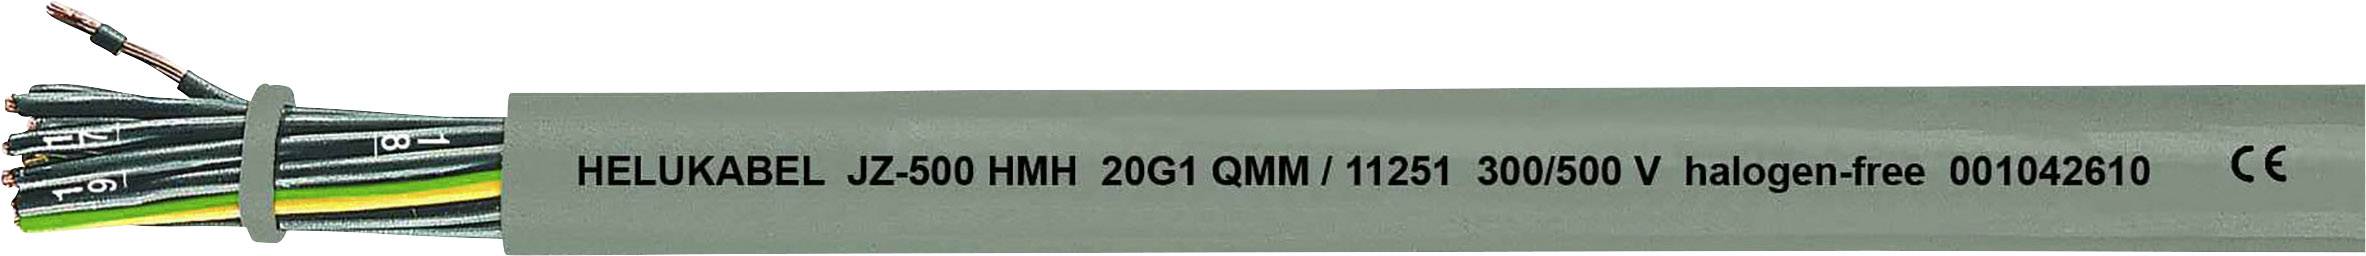 HELUKABEL JZ-500 HMH Steuerleitung 5 G 0.75 mm² Grau 11224-500 500 m